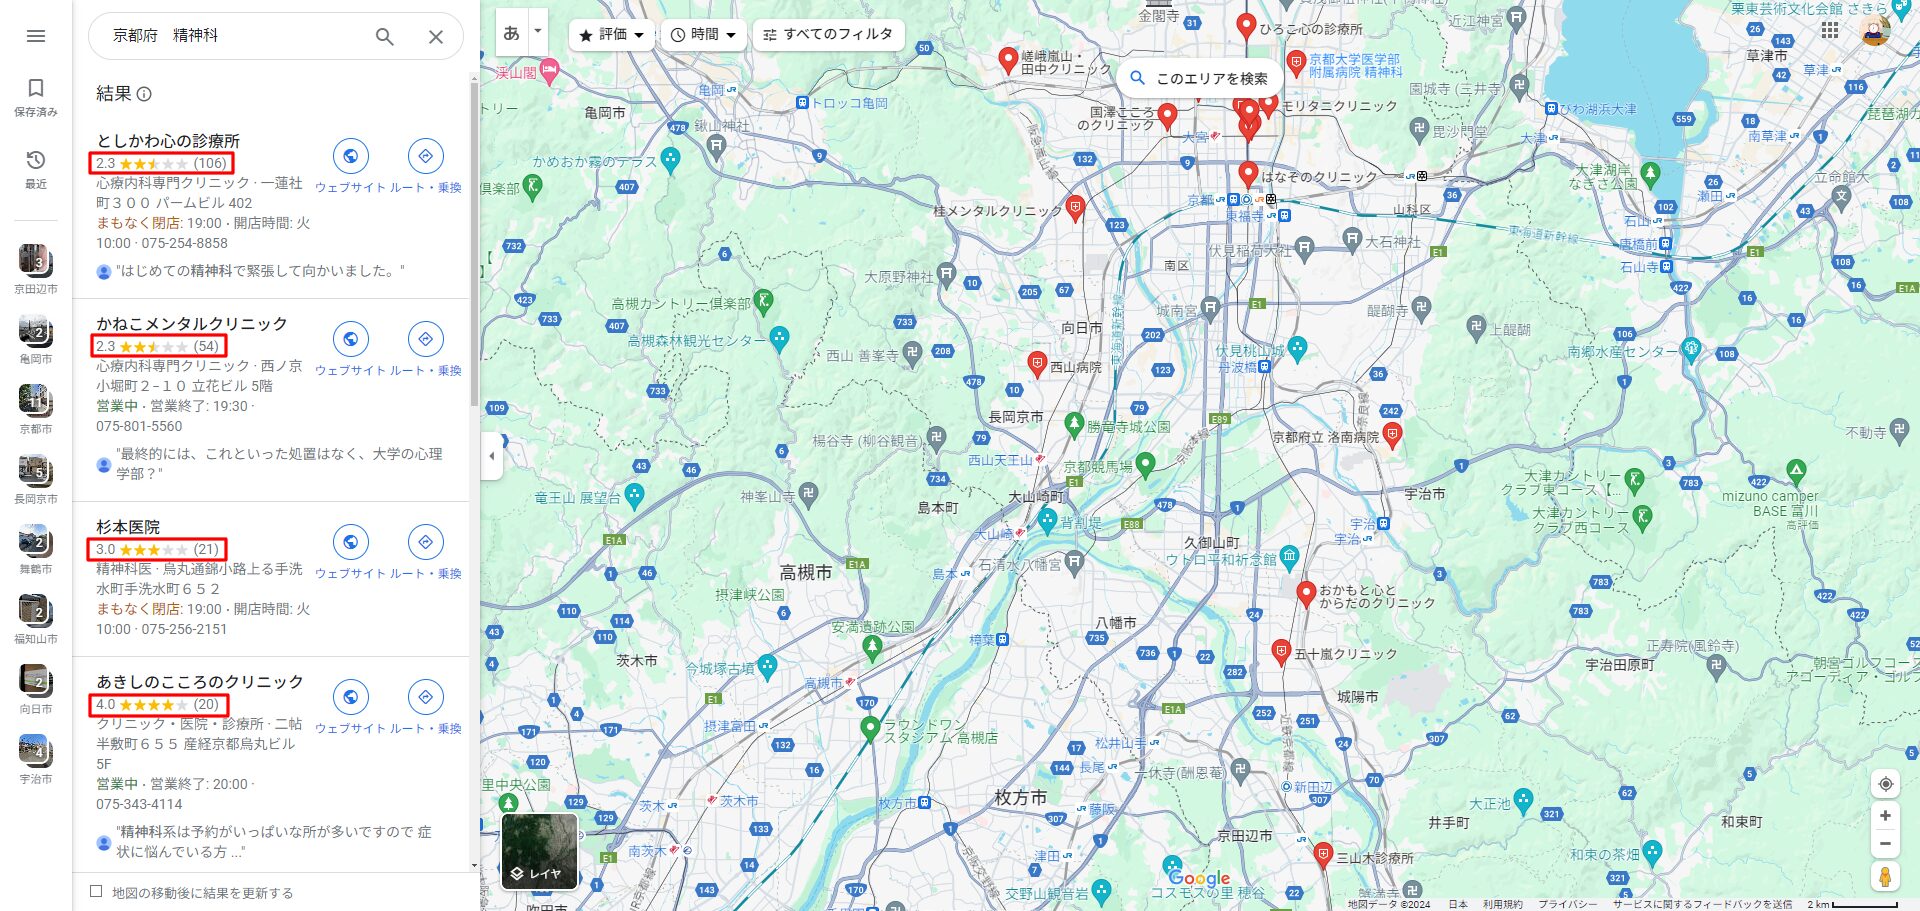 京都府-精神科-Google-マップ